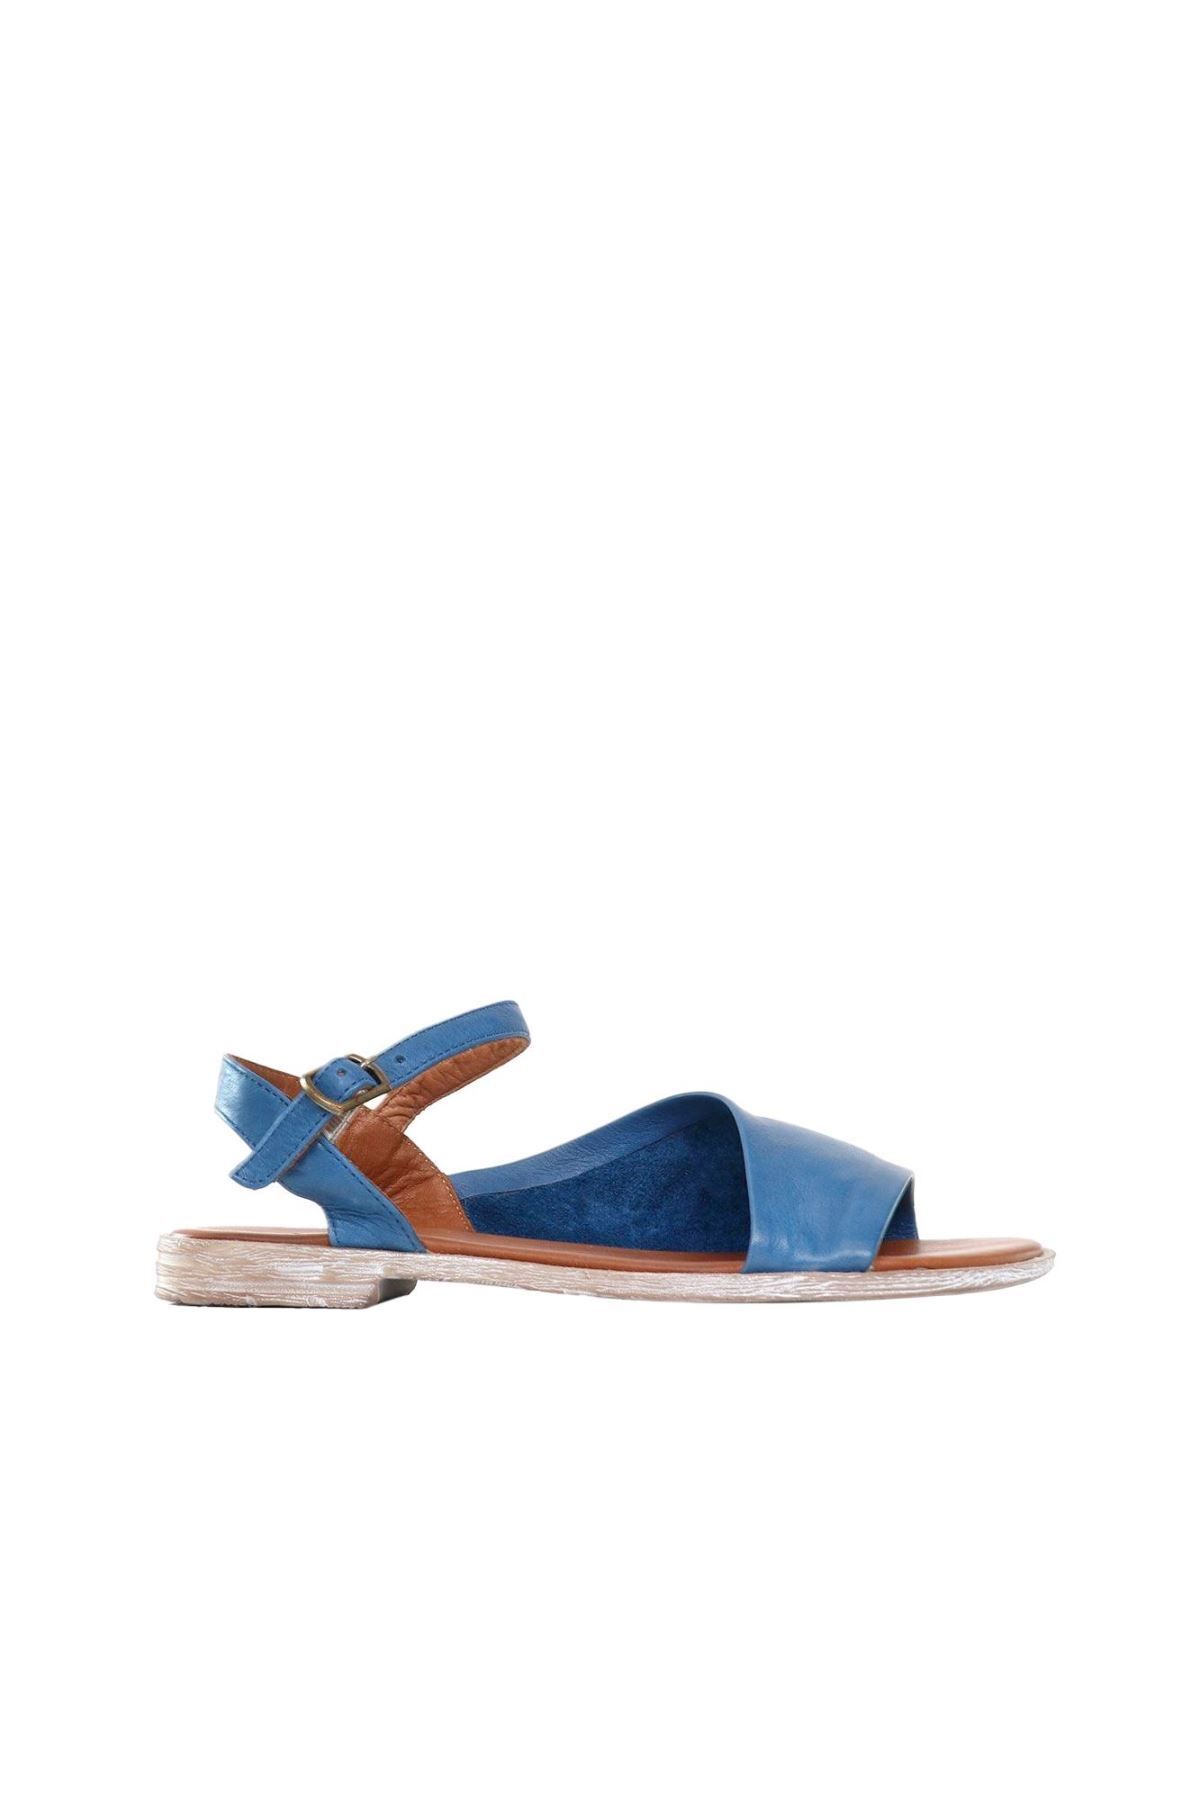 BUENO Shoes Mavi Deri Kadın Sandalet